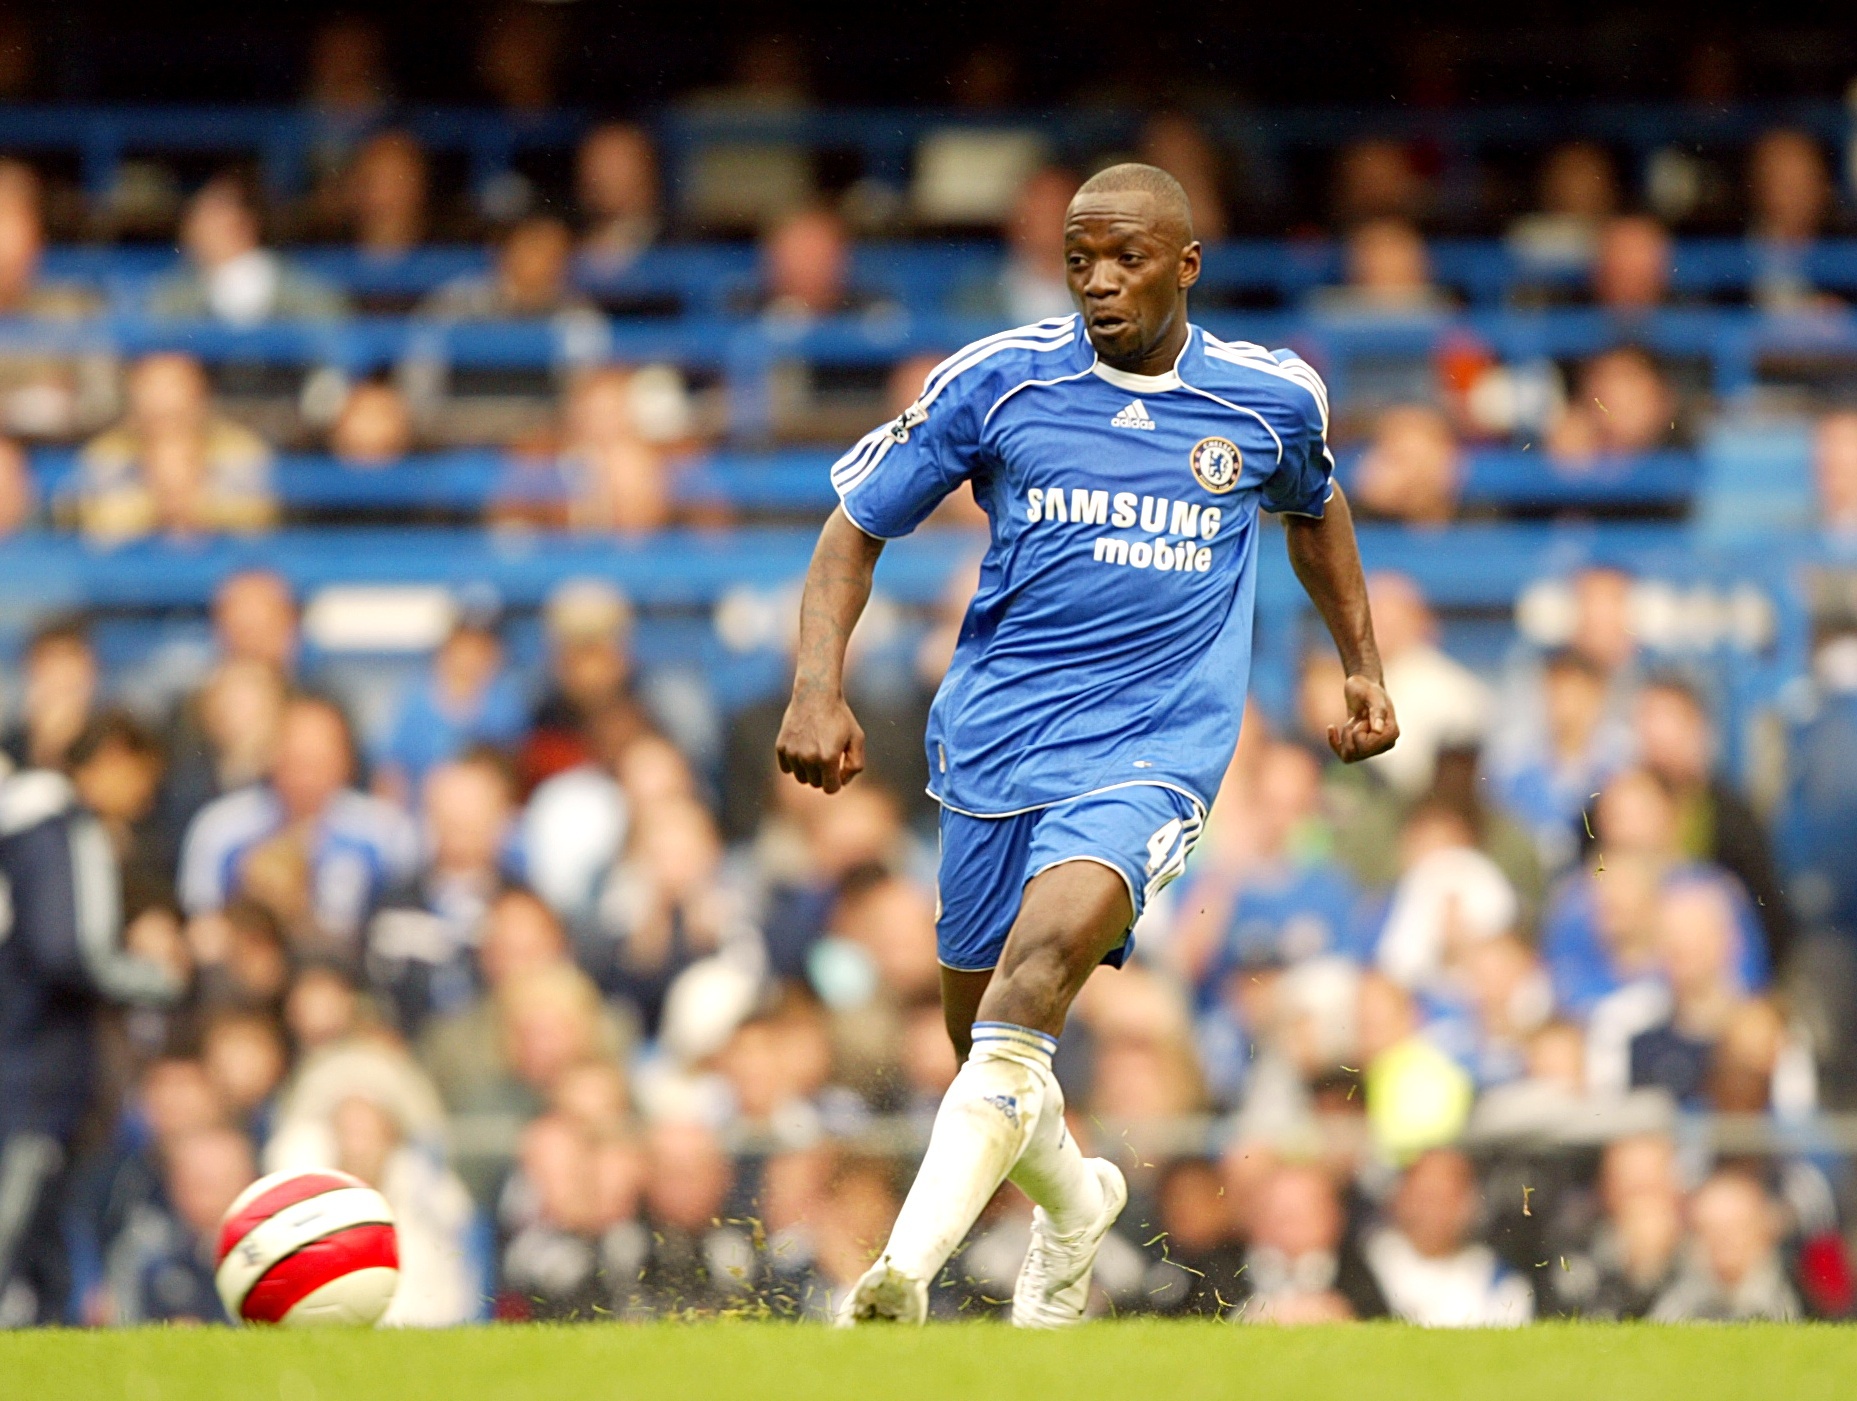 Former Chelsea midfielder Claude Makelele